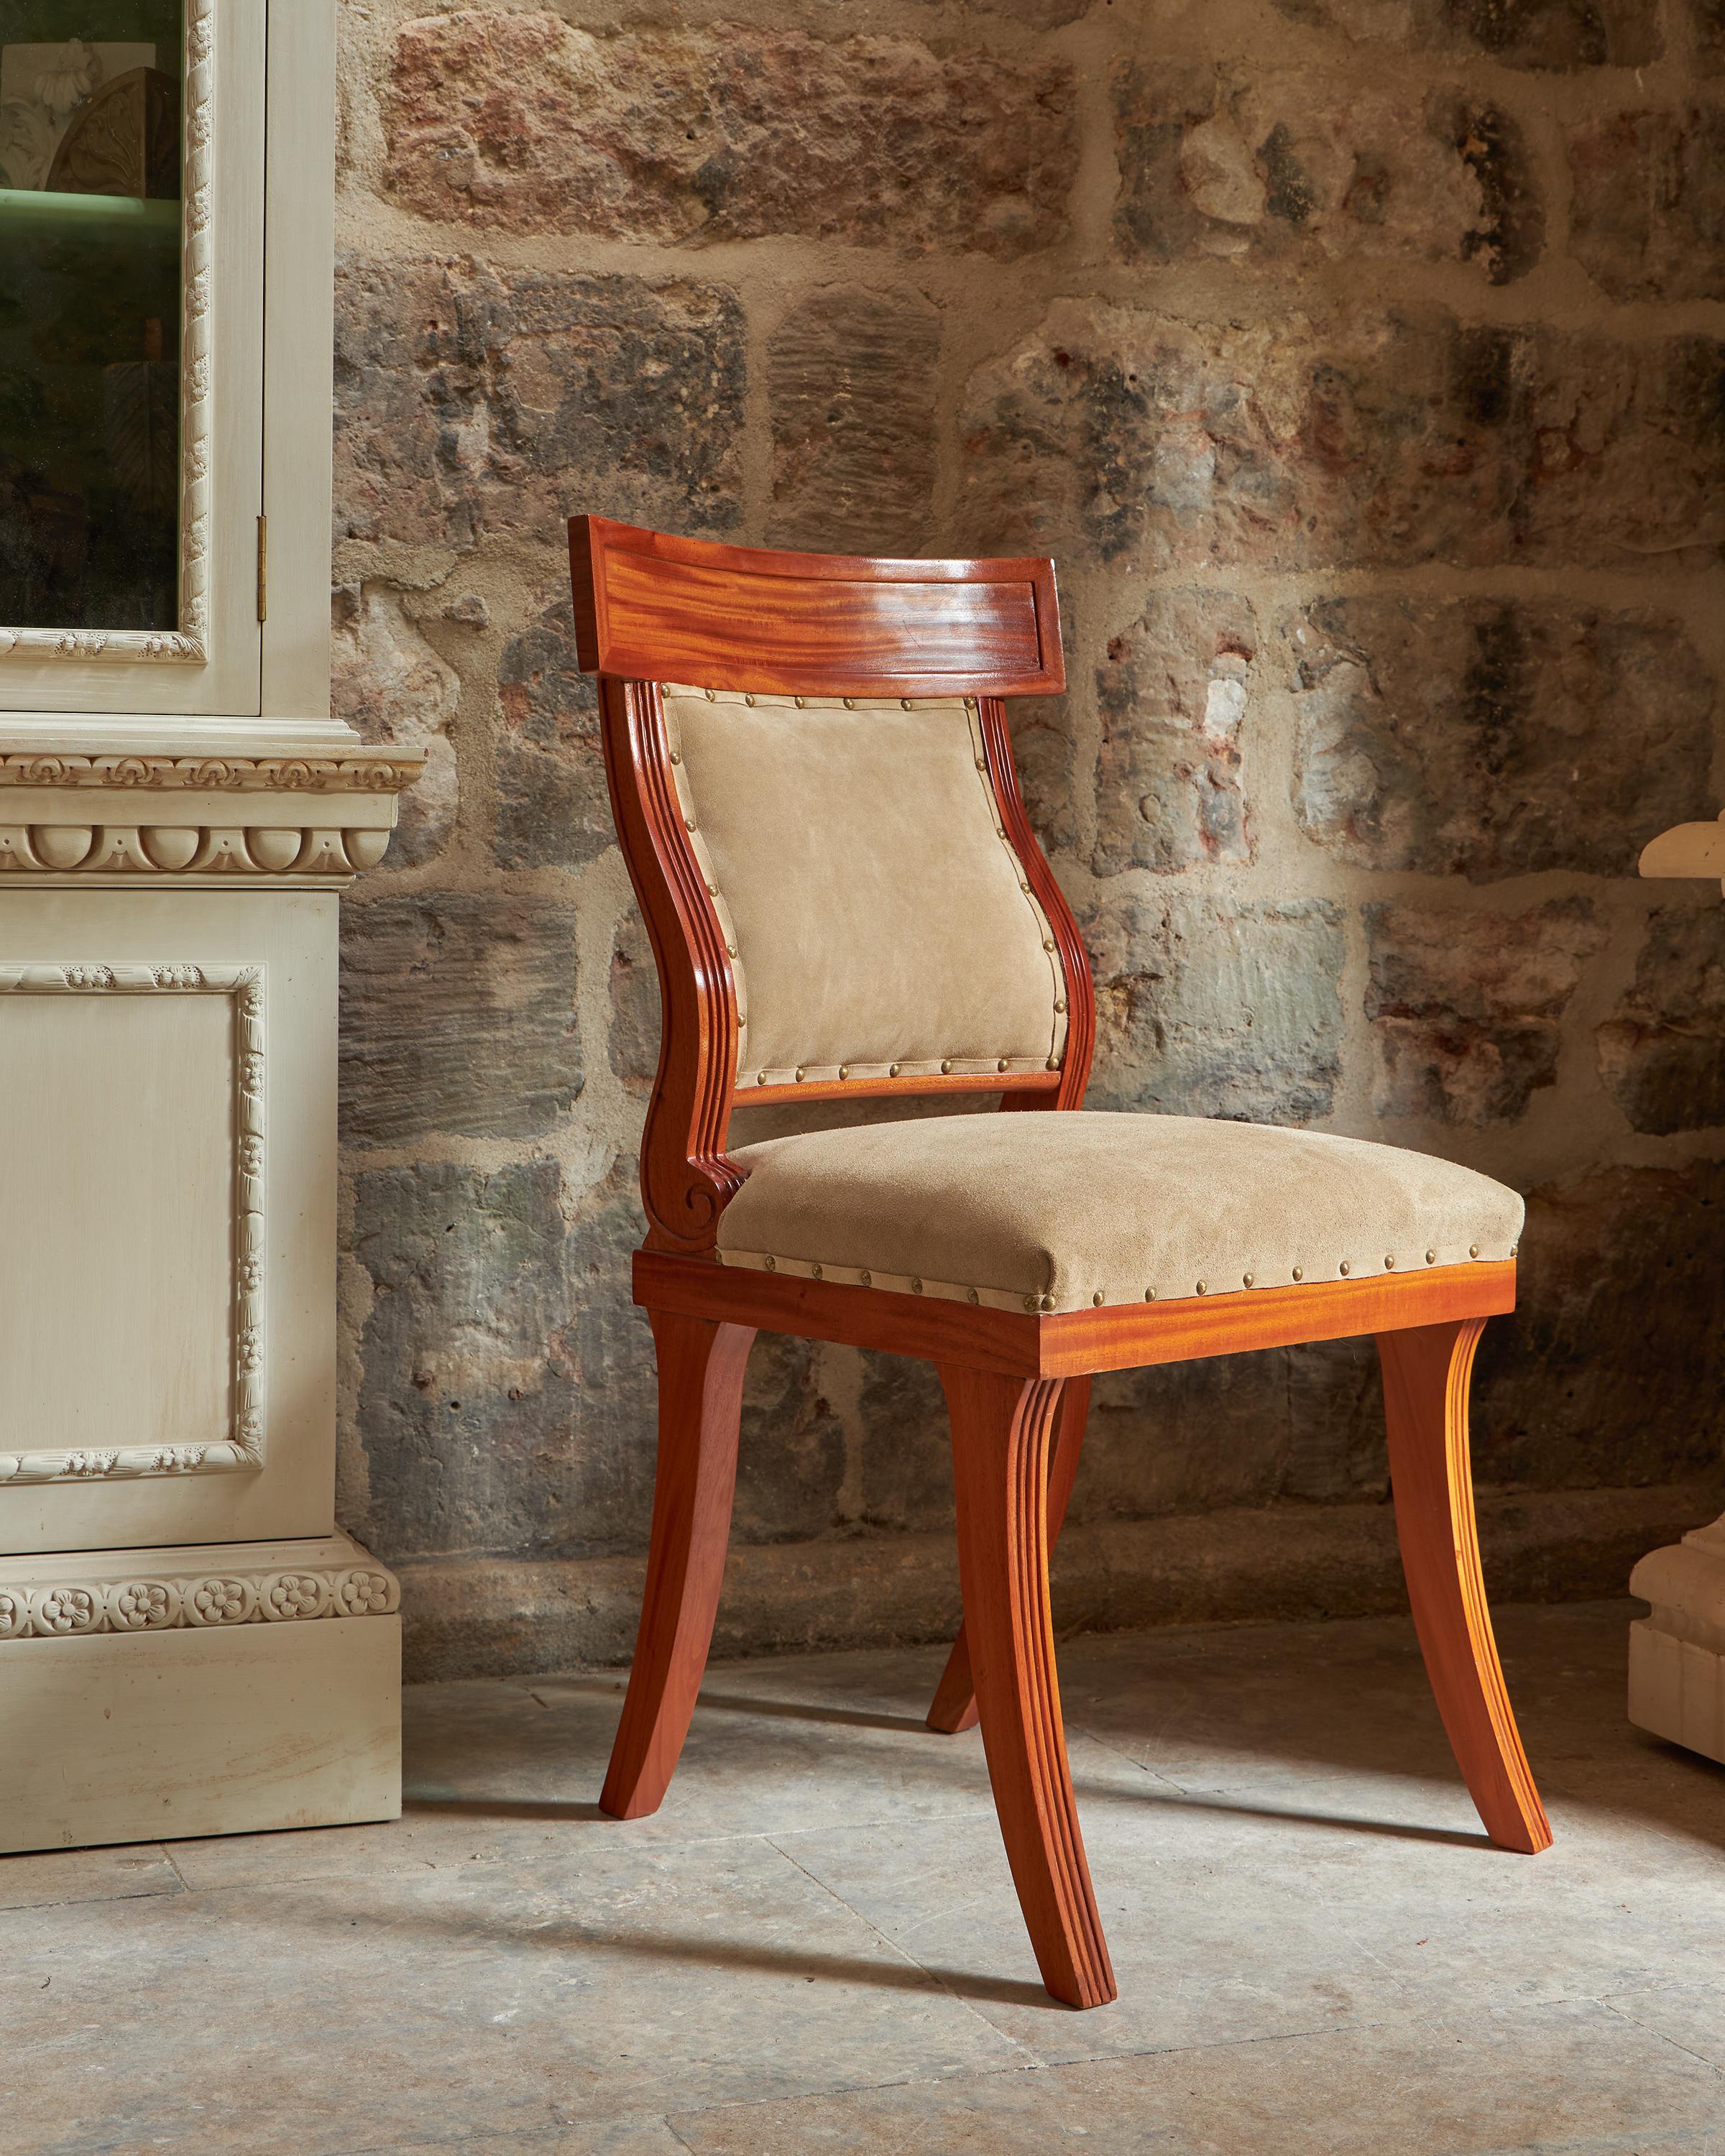 Inspiré d'un design développé par les Grecs au Ve siècle avant J.-C. Le design a ensuite été ressuscité à l'époque de la Régence anglaise. La chaise est fabriquée en bois de sono, semblable au bois de rose. A garnir dans le matériau du client.